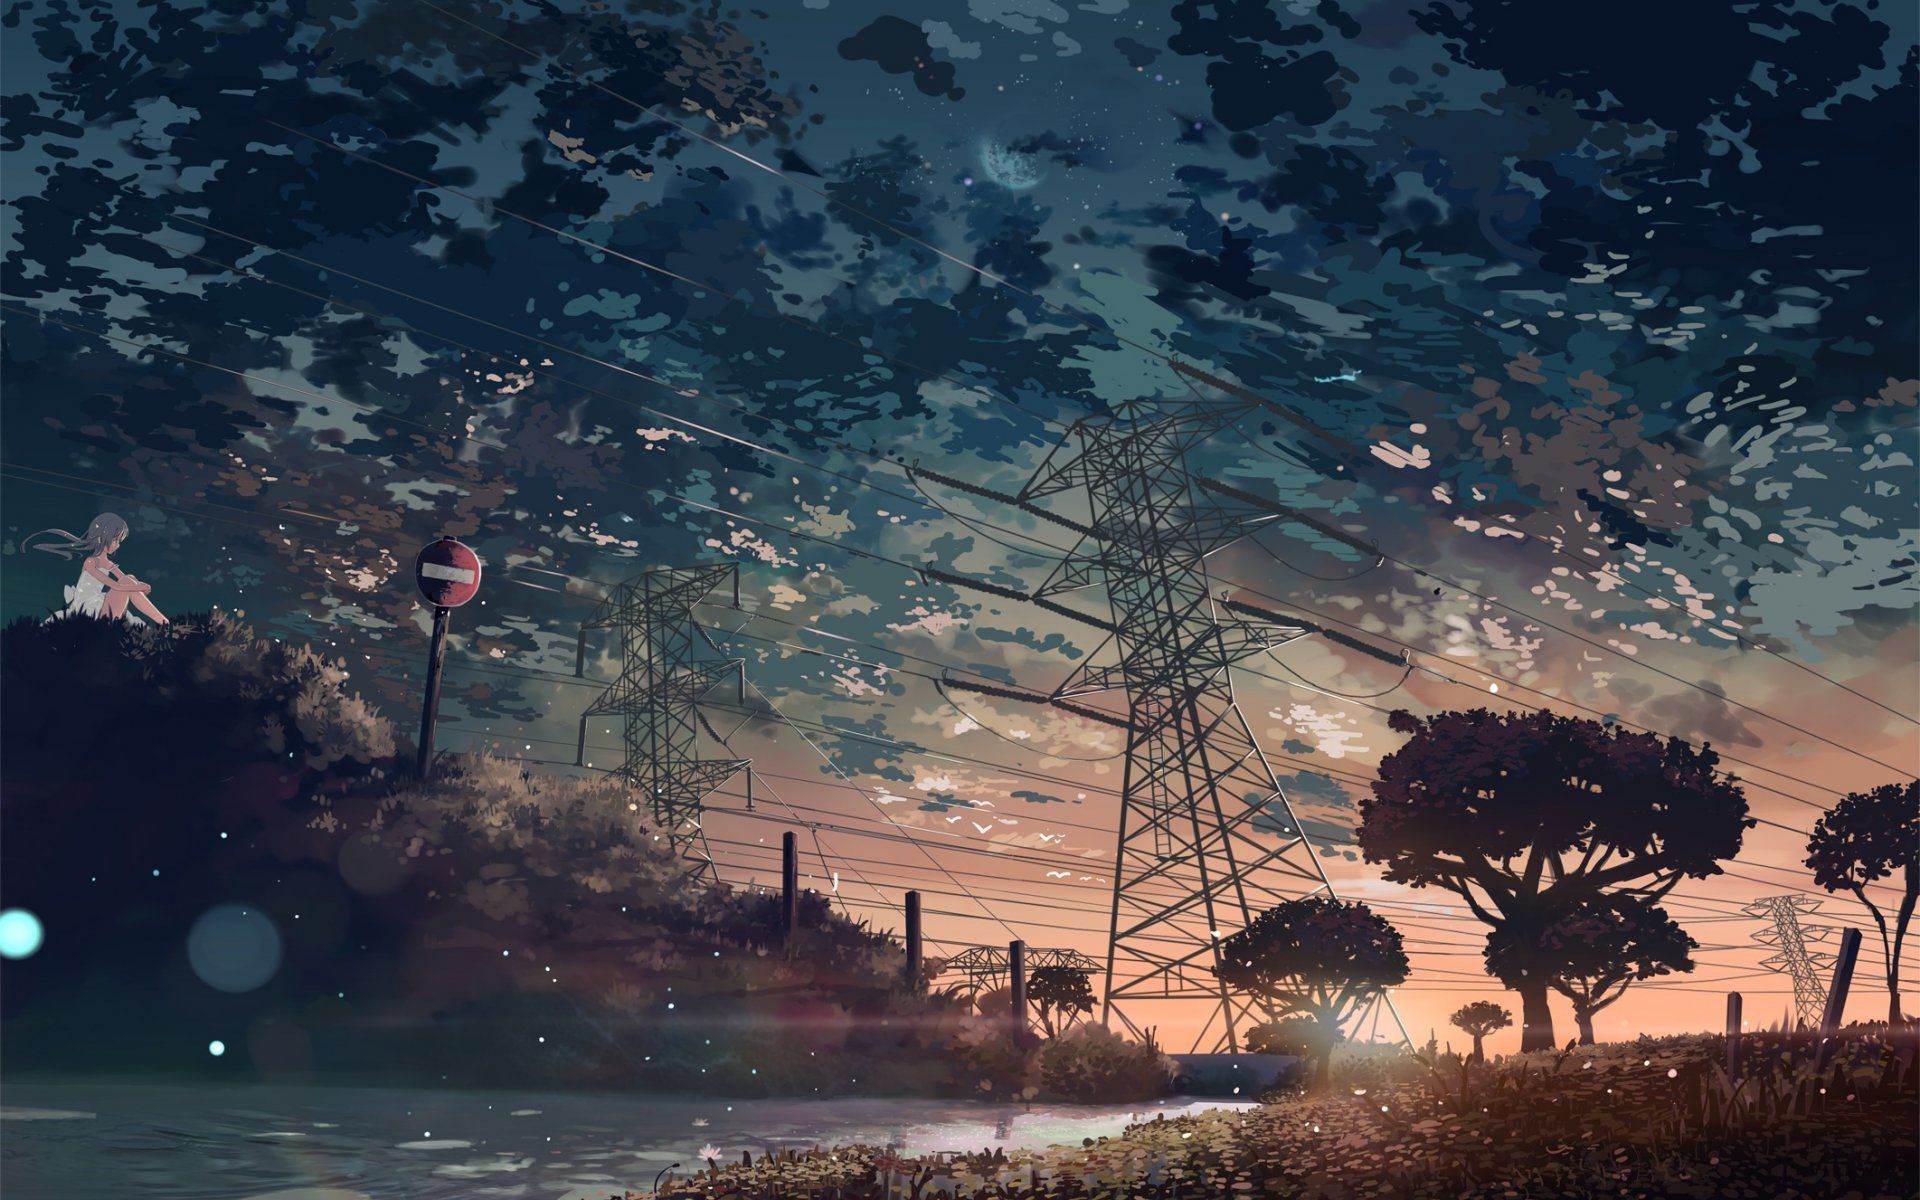 Anime Wallpaper Dump PT.2. Scenery wallpaper, Anime scenery, Landscape wallpaper